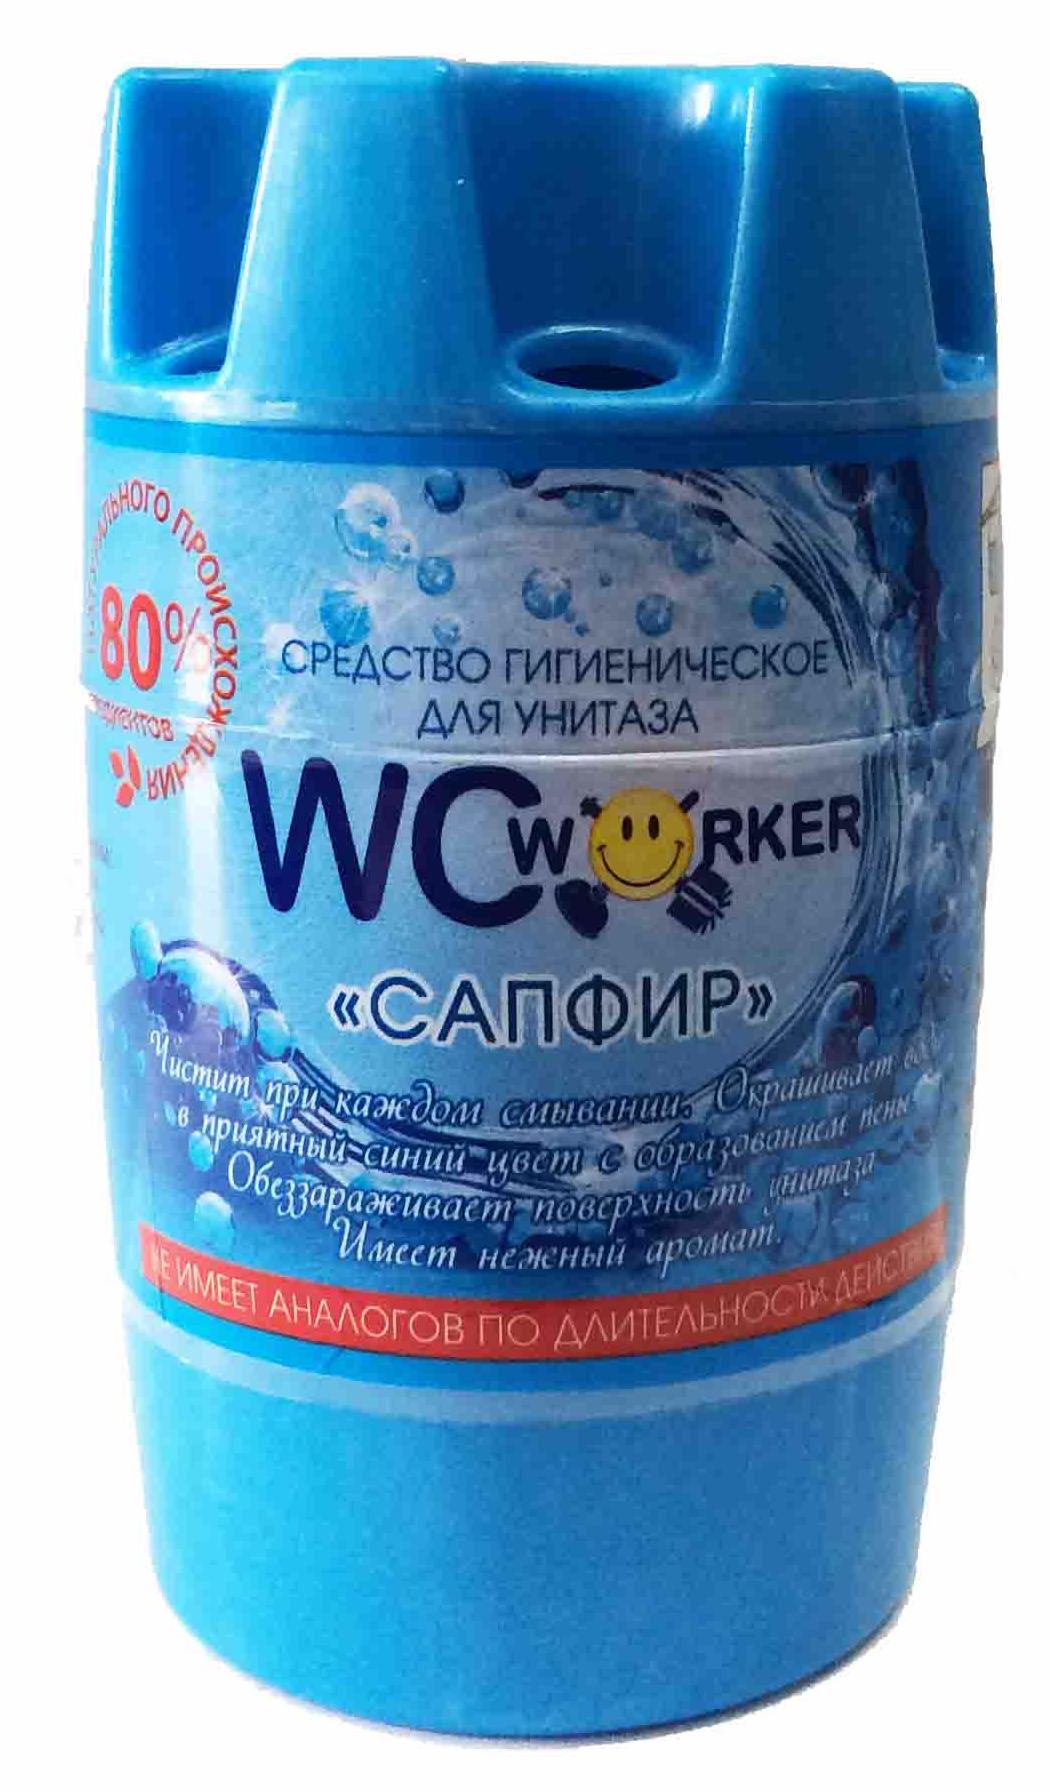 WCworker Сапфир гигиеническое средство для унитаза 135 гр